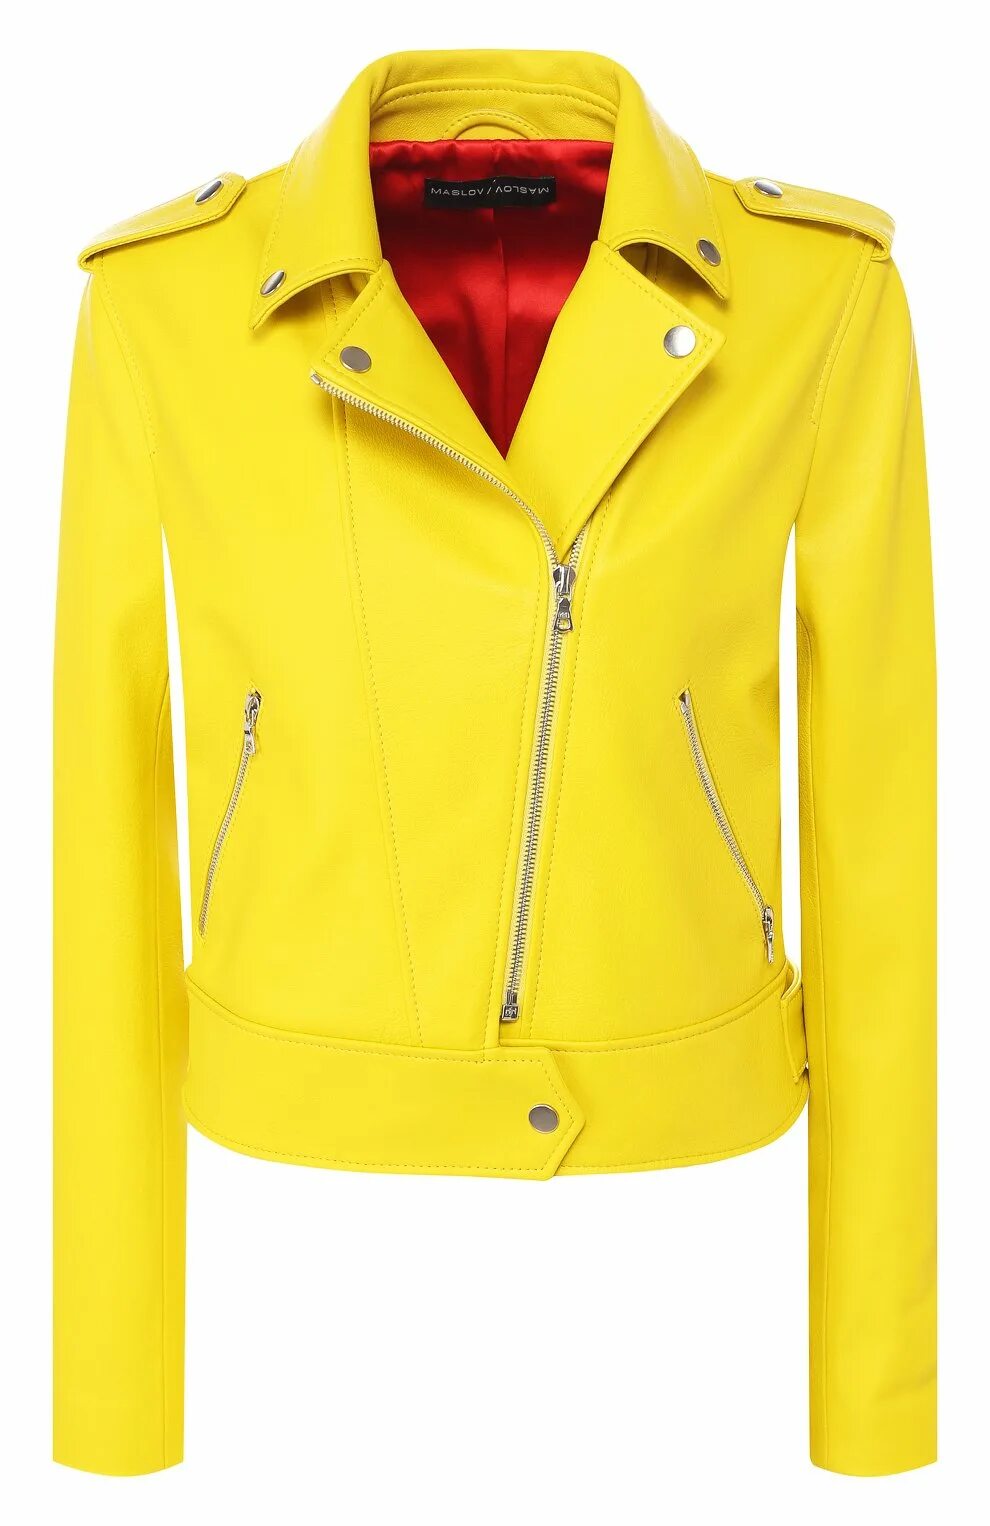 Лимонная кожаная куртка. Желтая кожаная куртка. Желтая косуха. Желтая косуха женская. Куртка косуха желтая.